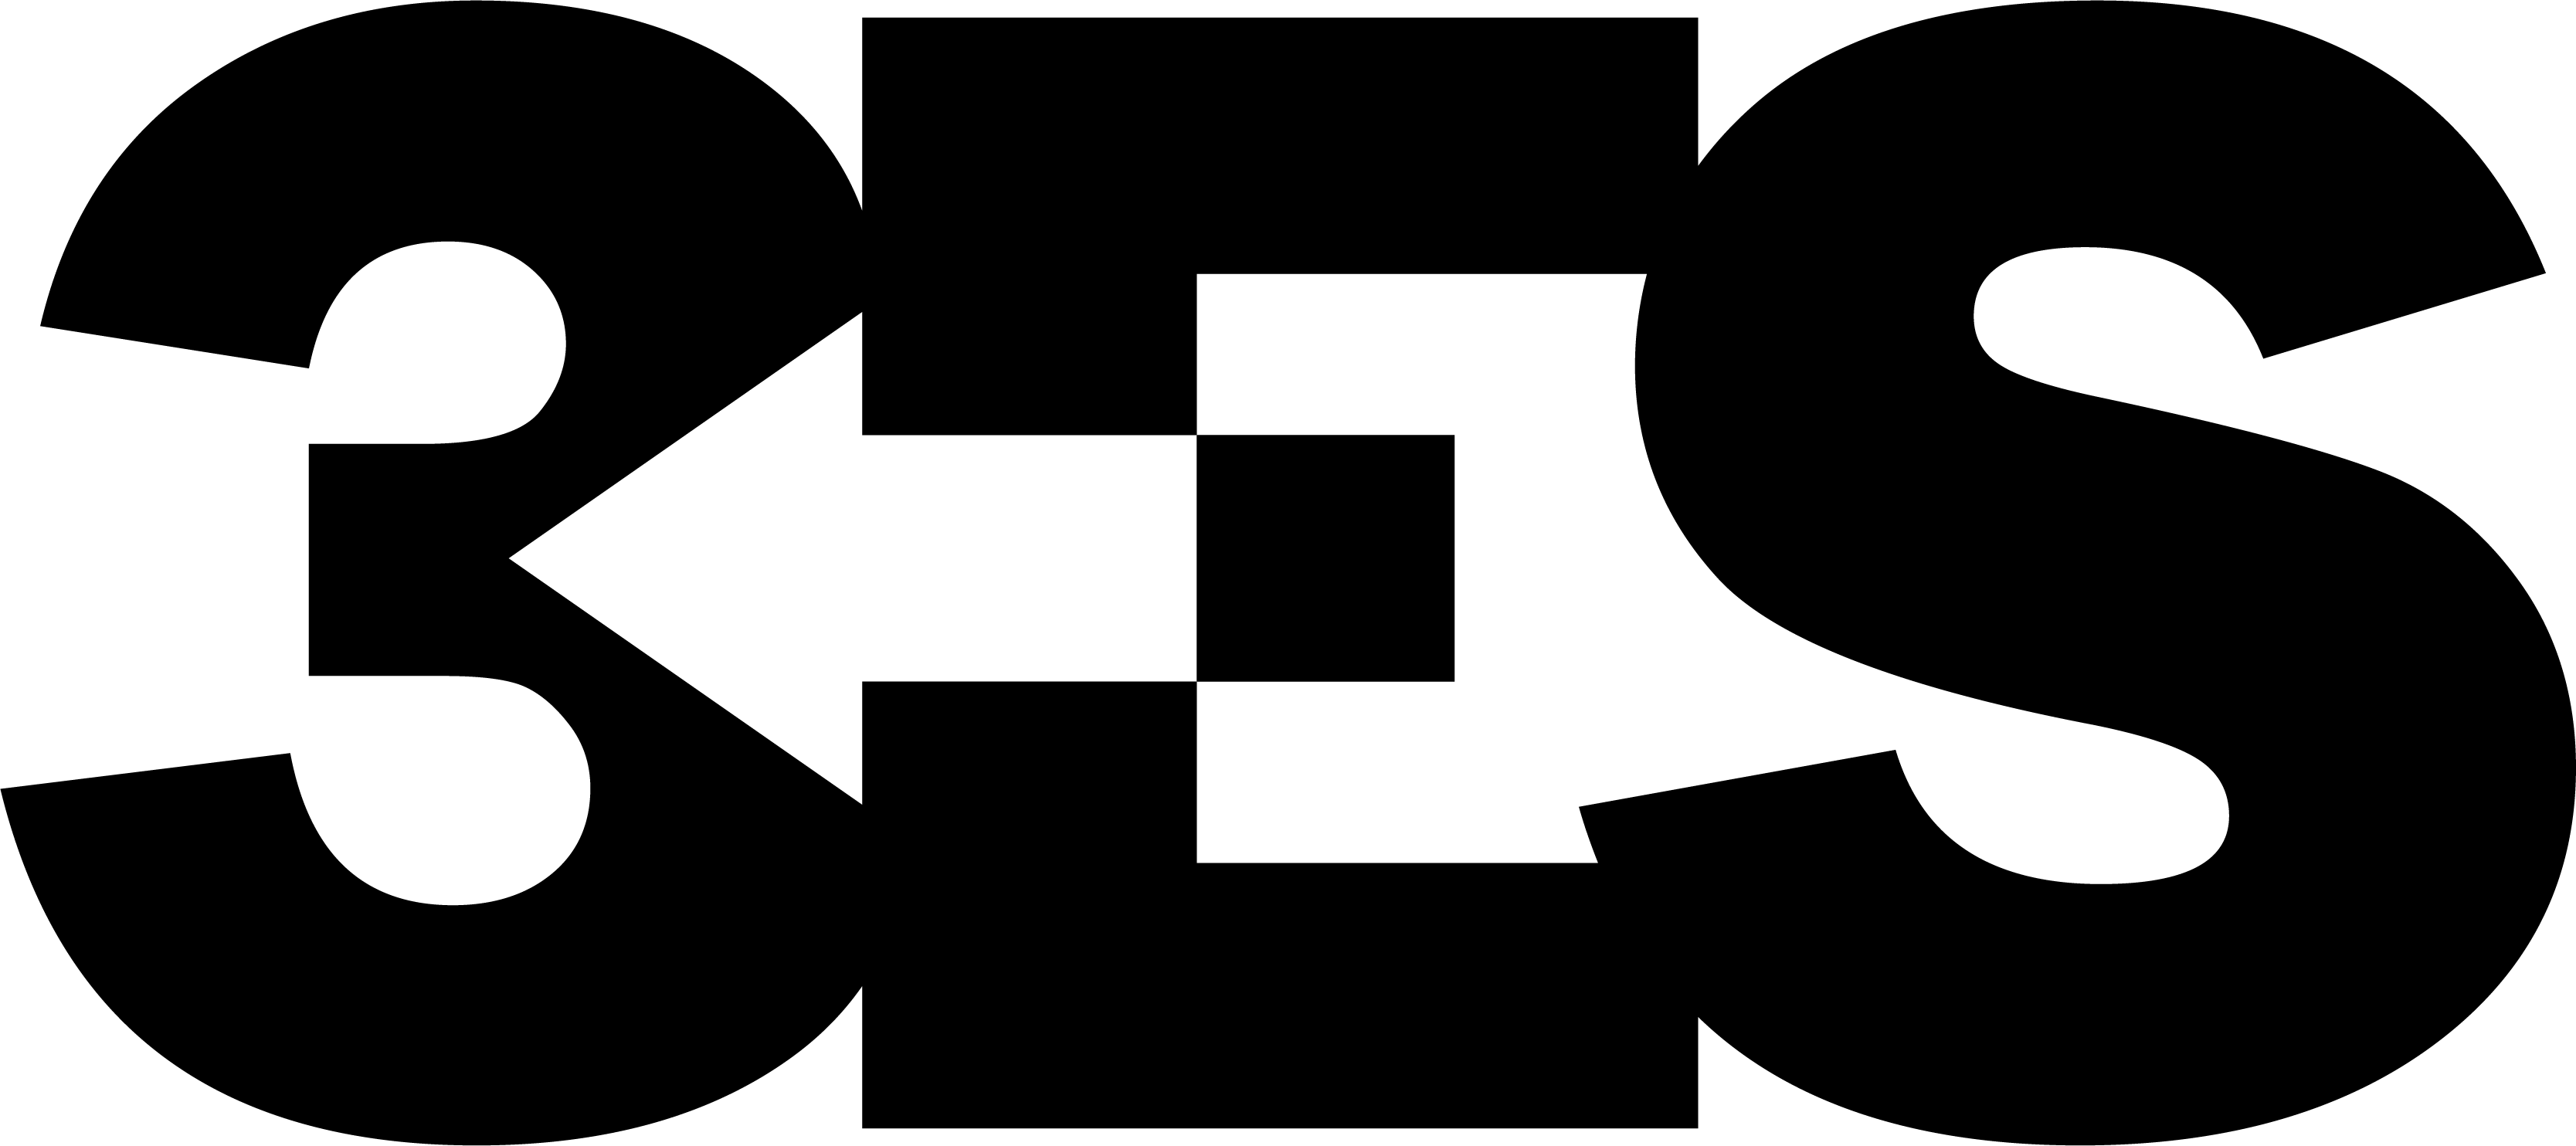 3ES logo